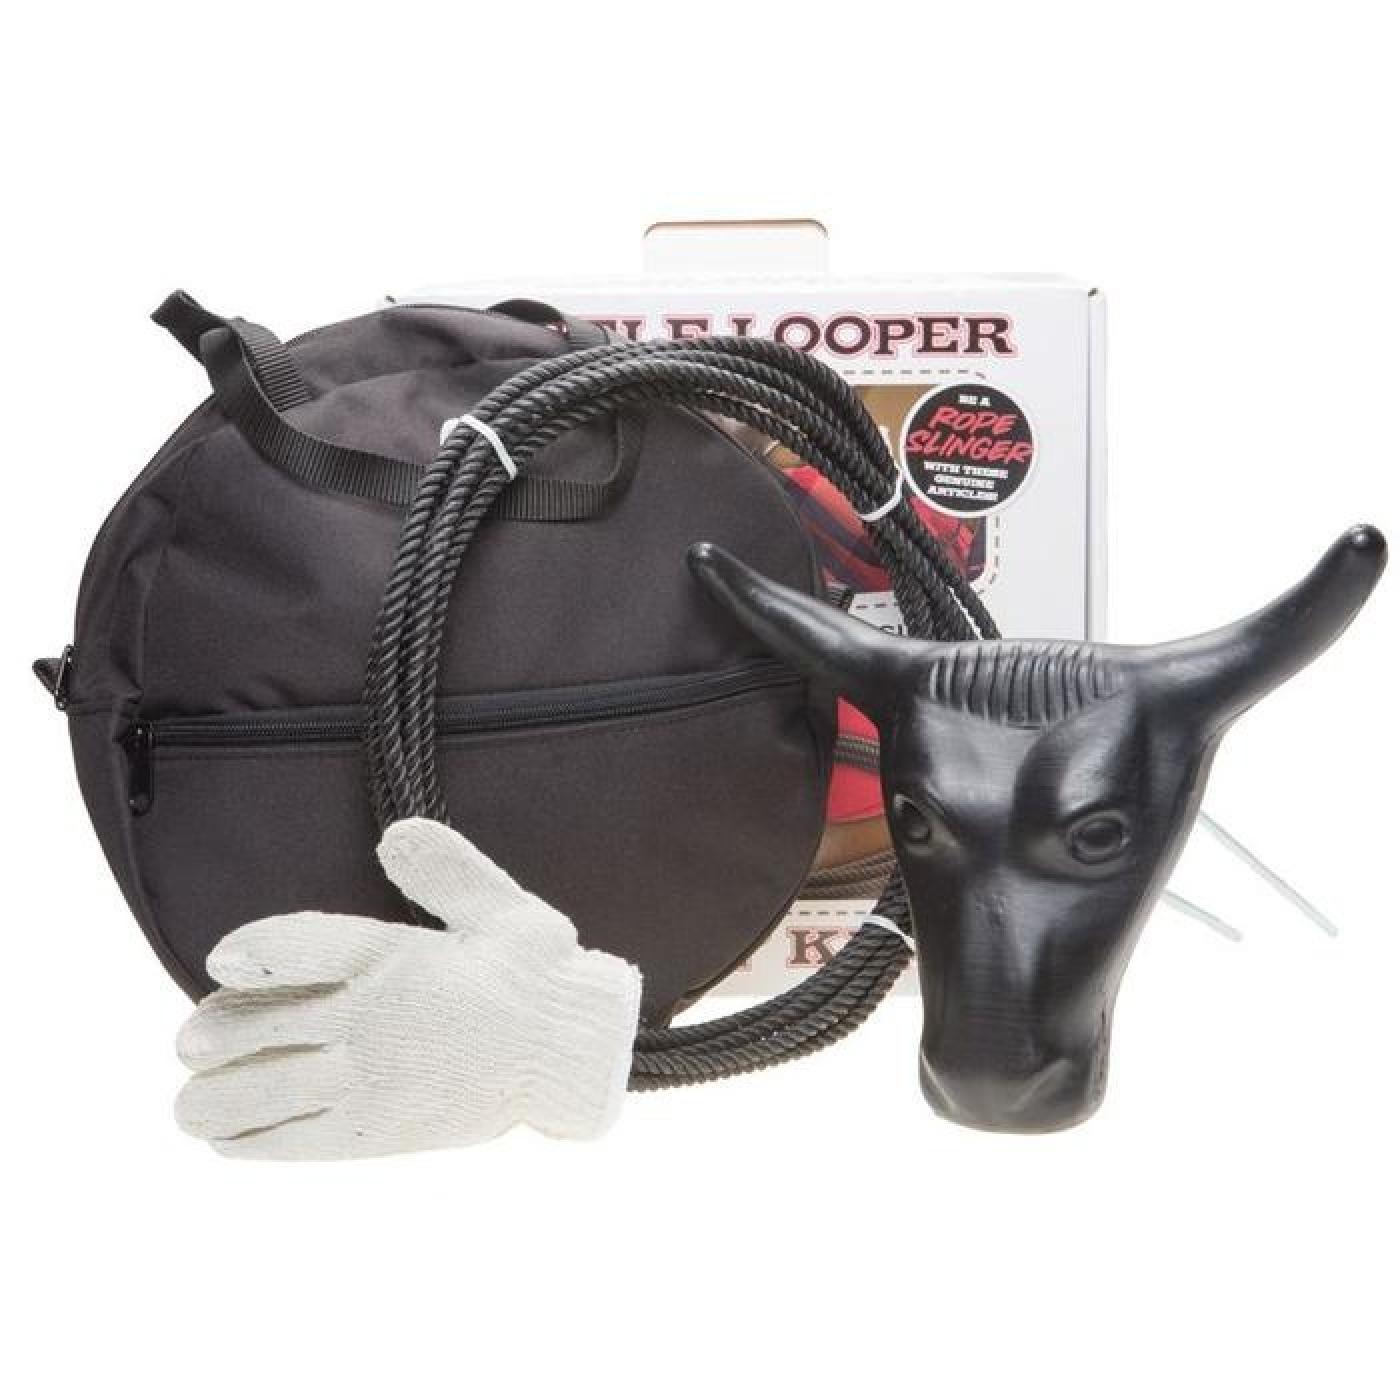 Mustang Little Looper Ropin' Kit with Steer Head